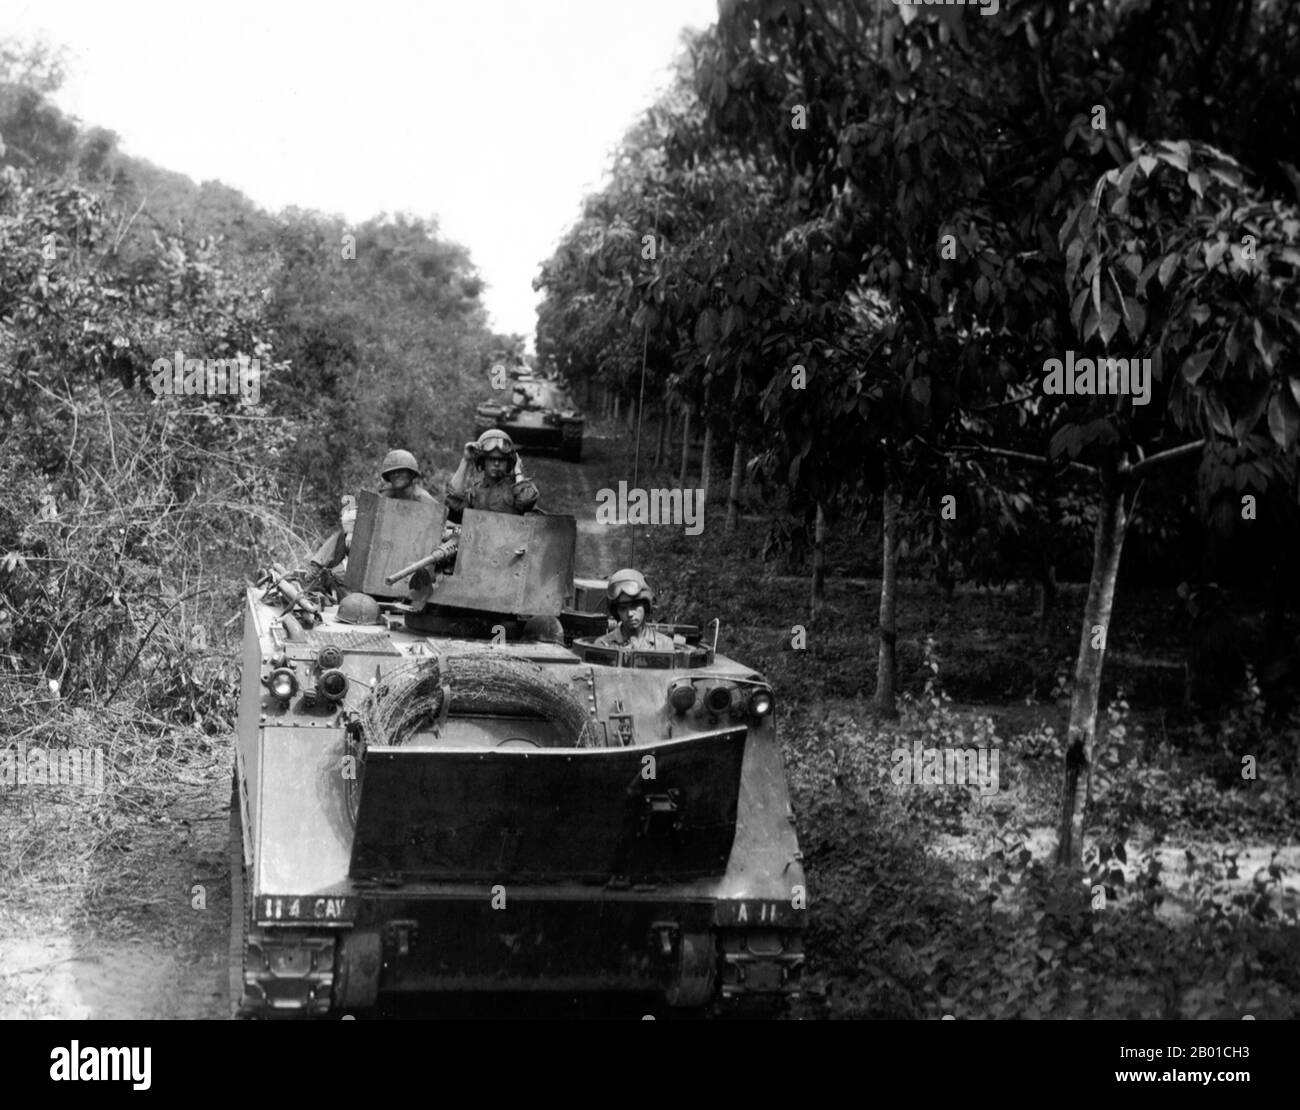 Vietnam: L'ARMÉE AMÉRICAINE M113 blindés de transport de personnel et les chars M4SA3 se déploient entre la jungle et une plantation de caoutchouc dans le 'Triangle de fer' au nord de Saigon, opération Cedar Falls, janvier 1967. La deuxième guerre d'Indochine, connue en Amérique sous le nom de guerre du Vietnam, a été un conflit militaire de l'époque de la Guerre froide qui s'est produit au Vietnam, au Laos et au Cambodge du 1 novembre 1955 à la chute de Saigon le 30 avril 1975. Cette guerre a suivi la première Guerre d'Indochine et a été menée entre le Nord du Vietnam, soutenu par ses alliés communistes, et le gouvernement du Sud Vietnam, soutenu par les États-Unis Banque D'Images